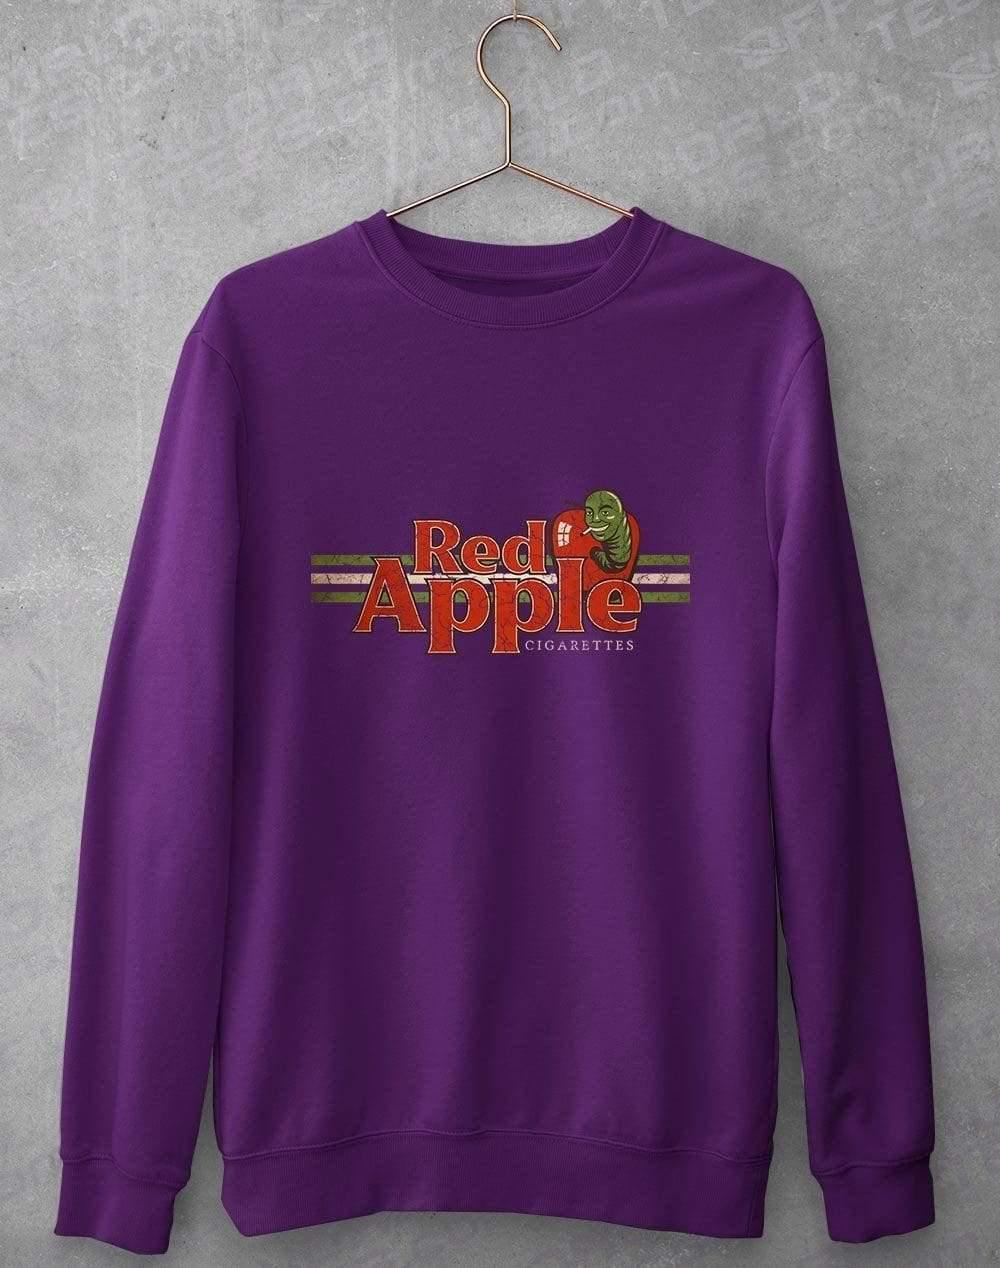 Red Apple Cigarettes Sweatshirt S / Purple  - Off World Tees